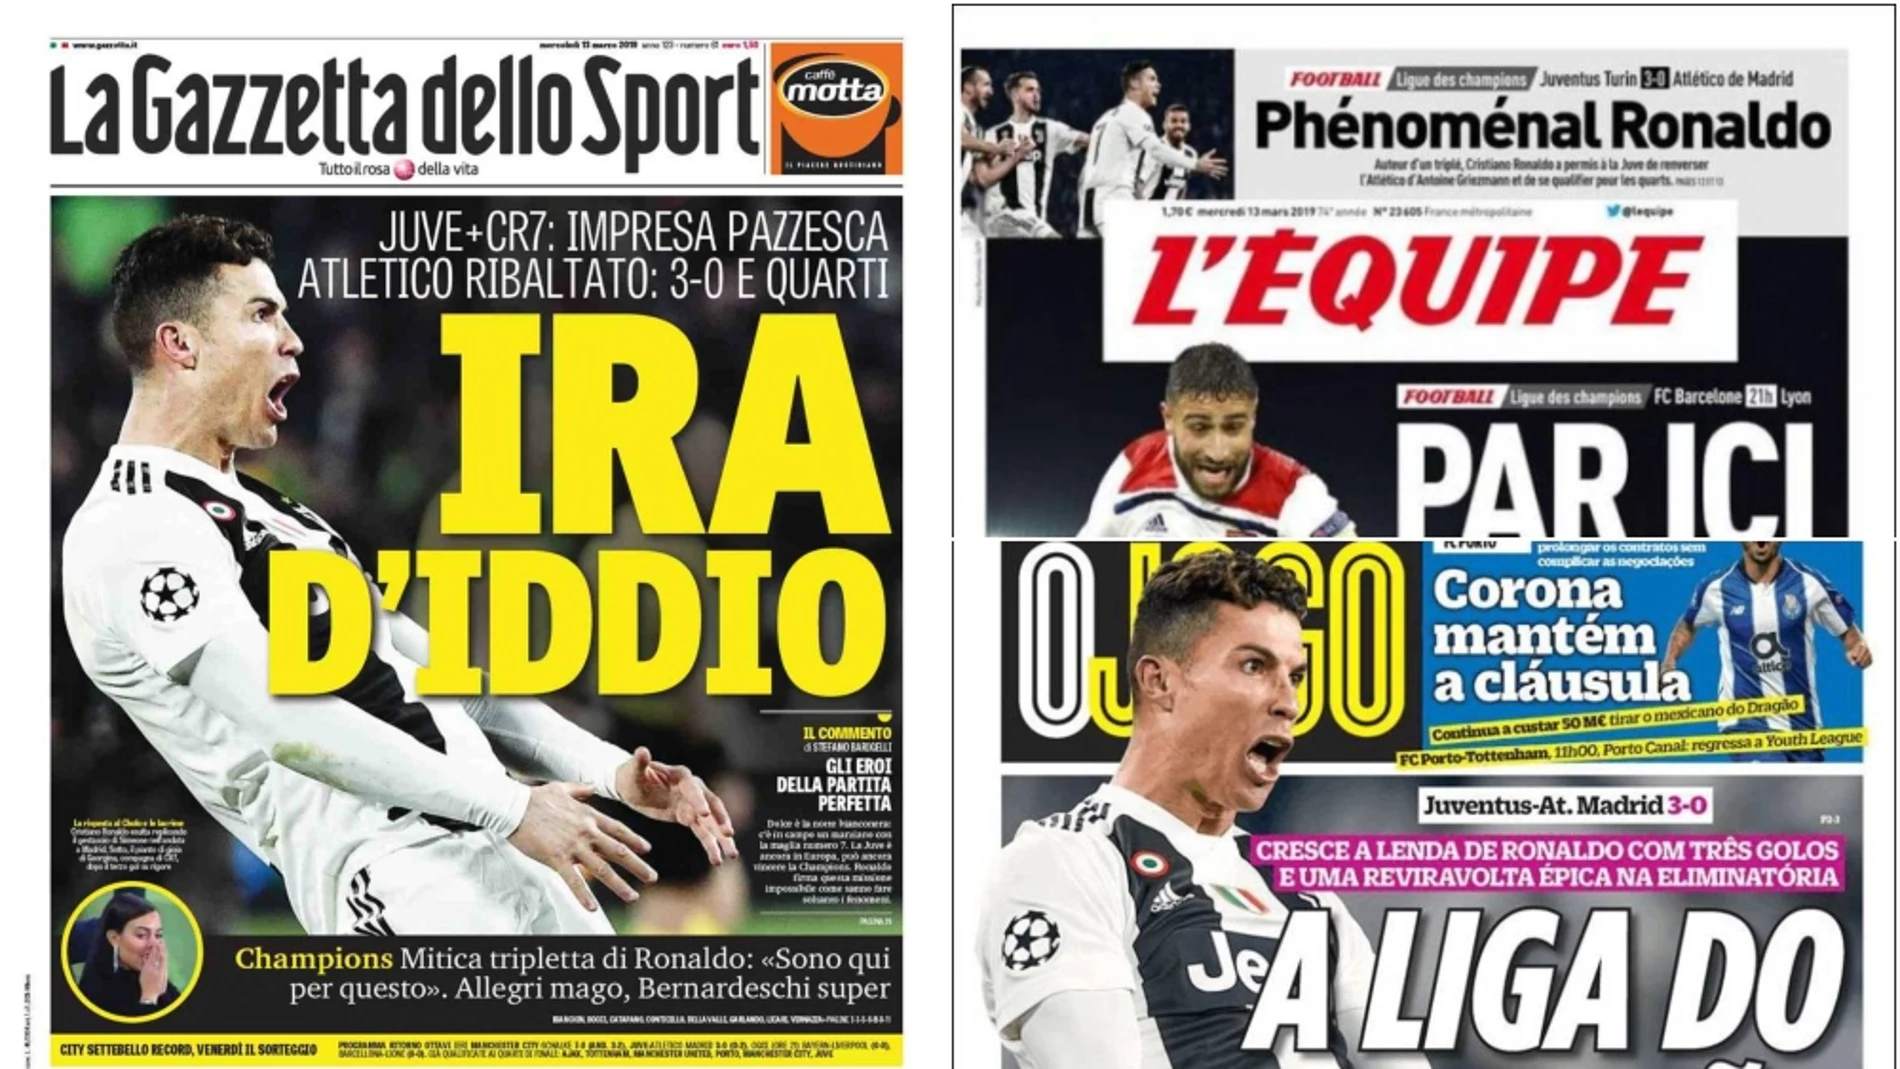 La prensa mundial alaba la actuación de Cristiano Ronaldo